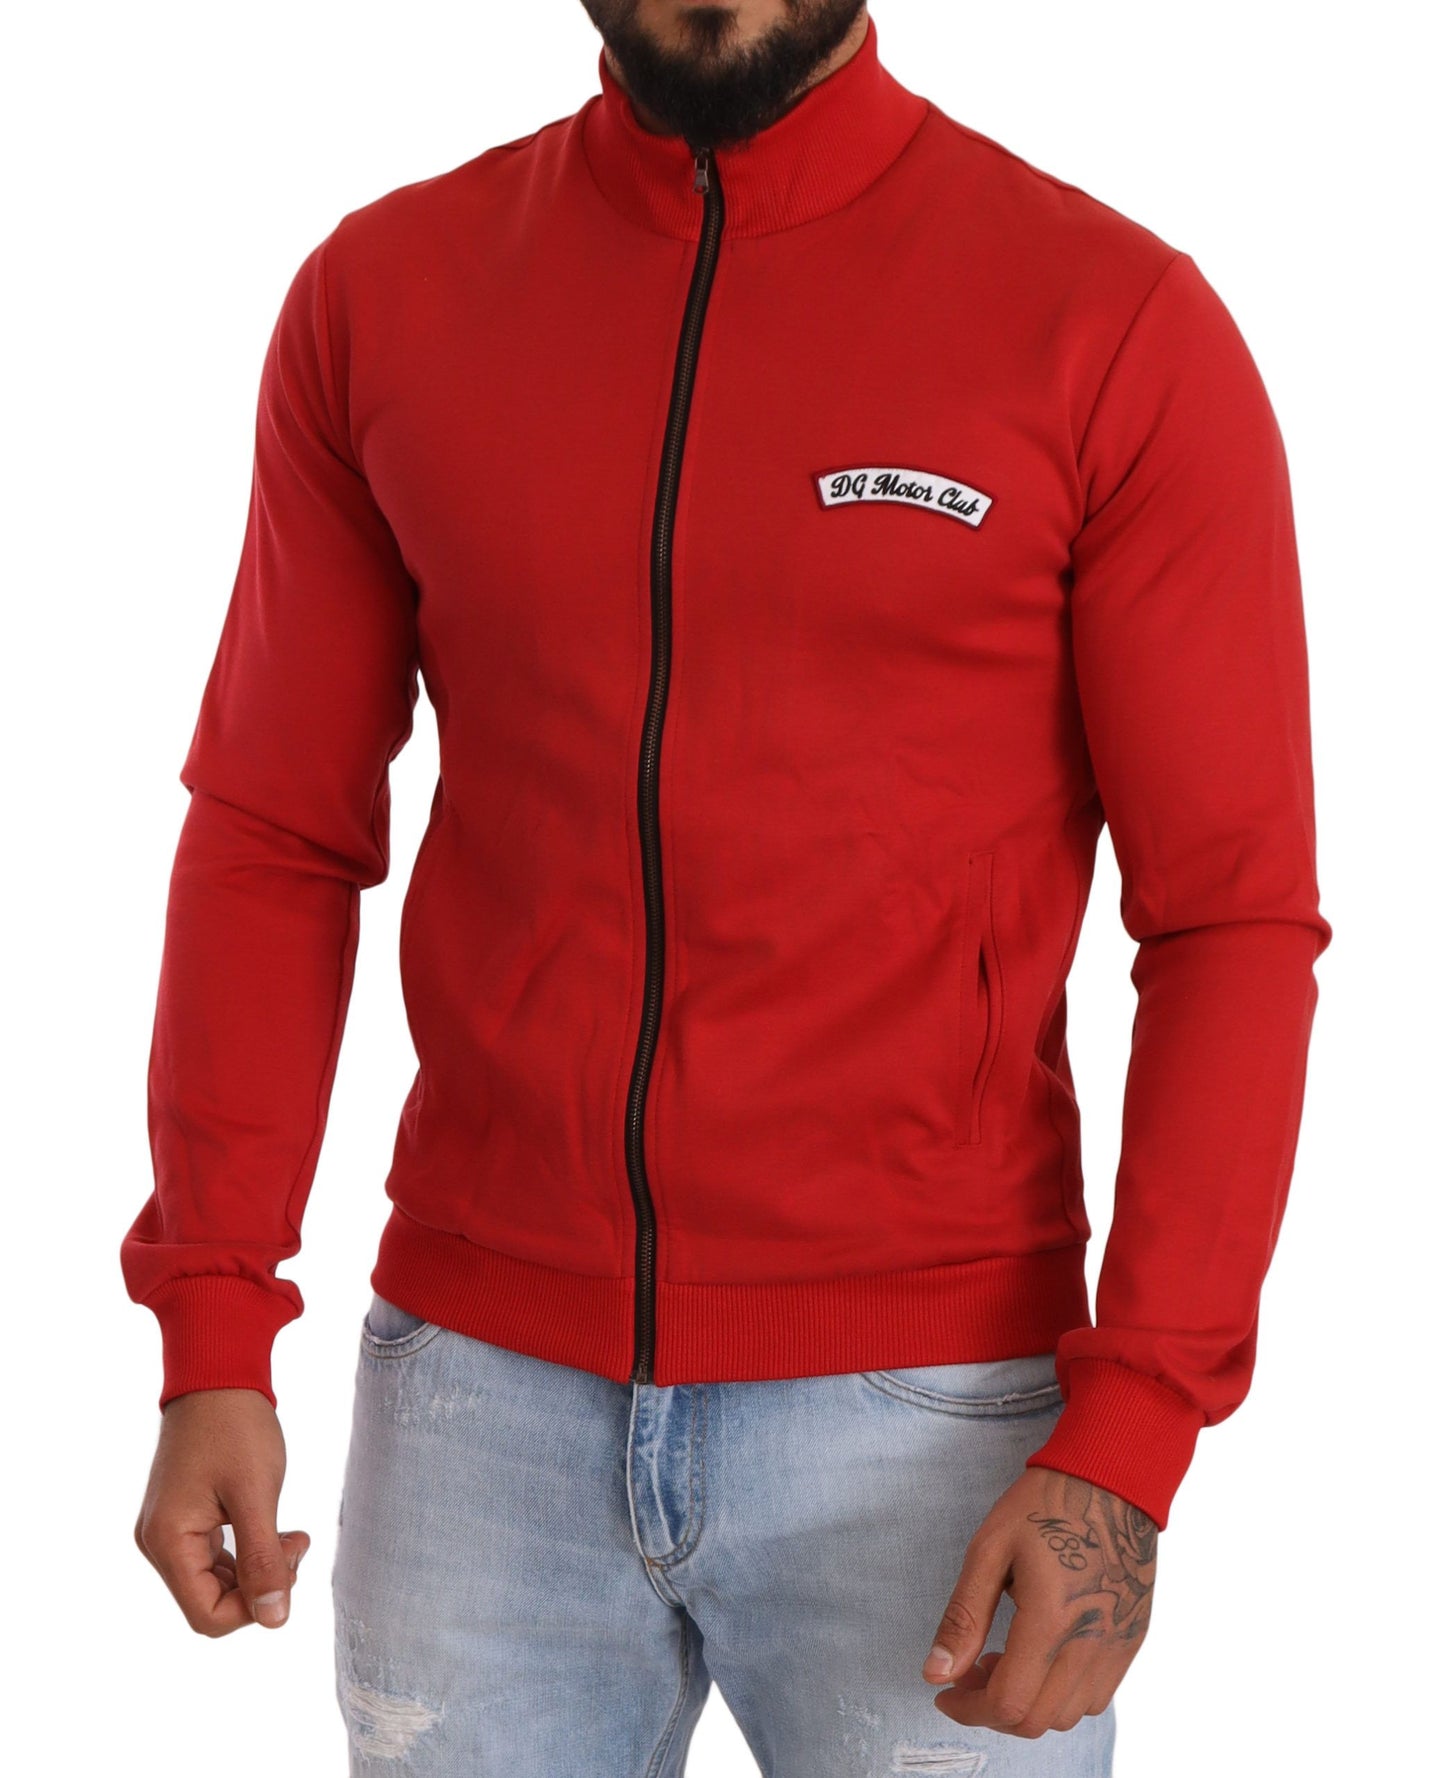 Dolce & Gabbana Red DG Motor Club Zipper Stretch Sweater